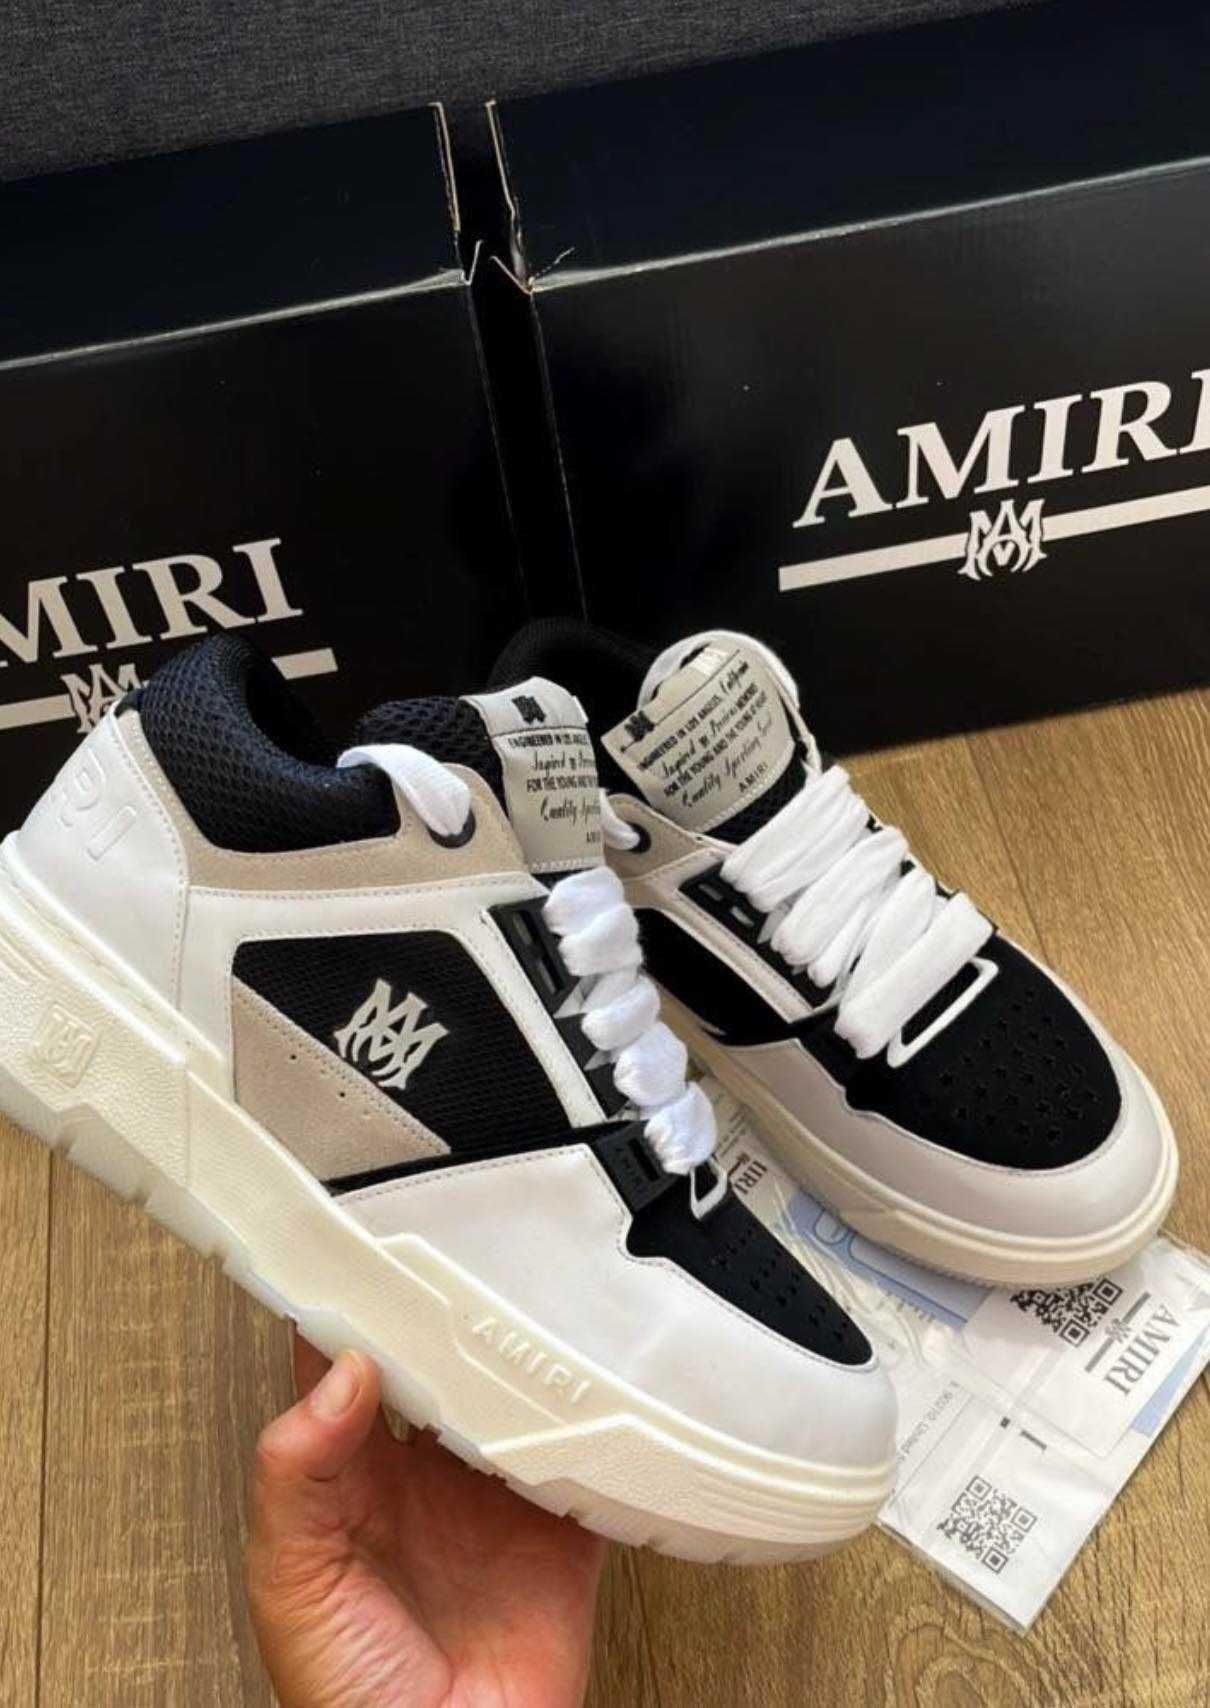 Adidasi/Sneakersi AMIRI Editie Limitata (Livrare cu verificare)